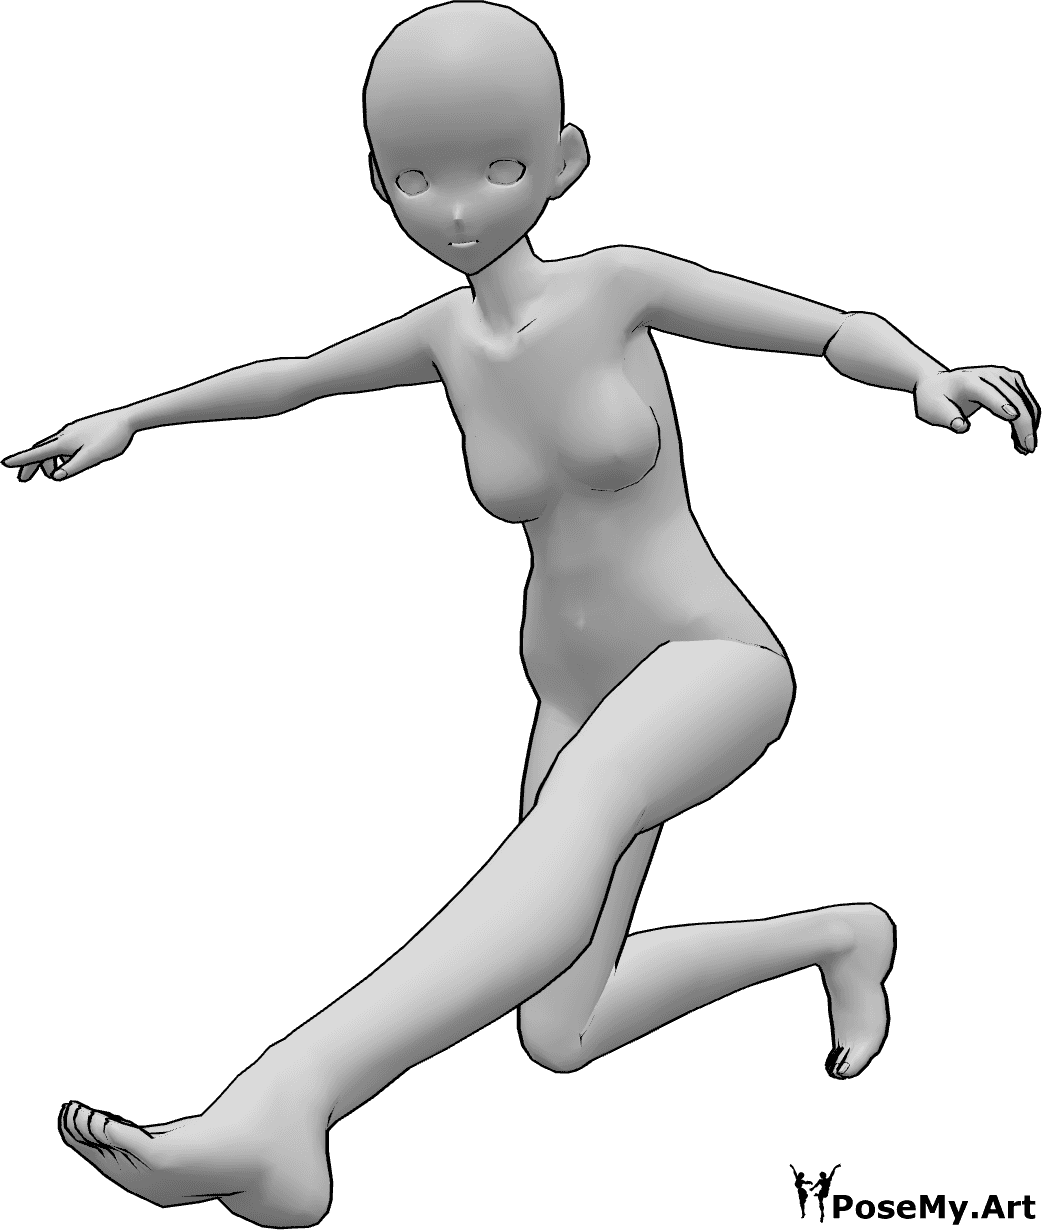 Riferimento alle pose- Posa di atterraggio dinamica Anime - Una donna animata sta atterrando, in equilibrio con le mani e con lo sguardo rivolto in avanti.